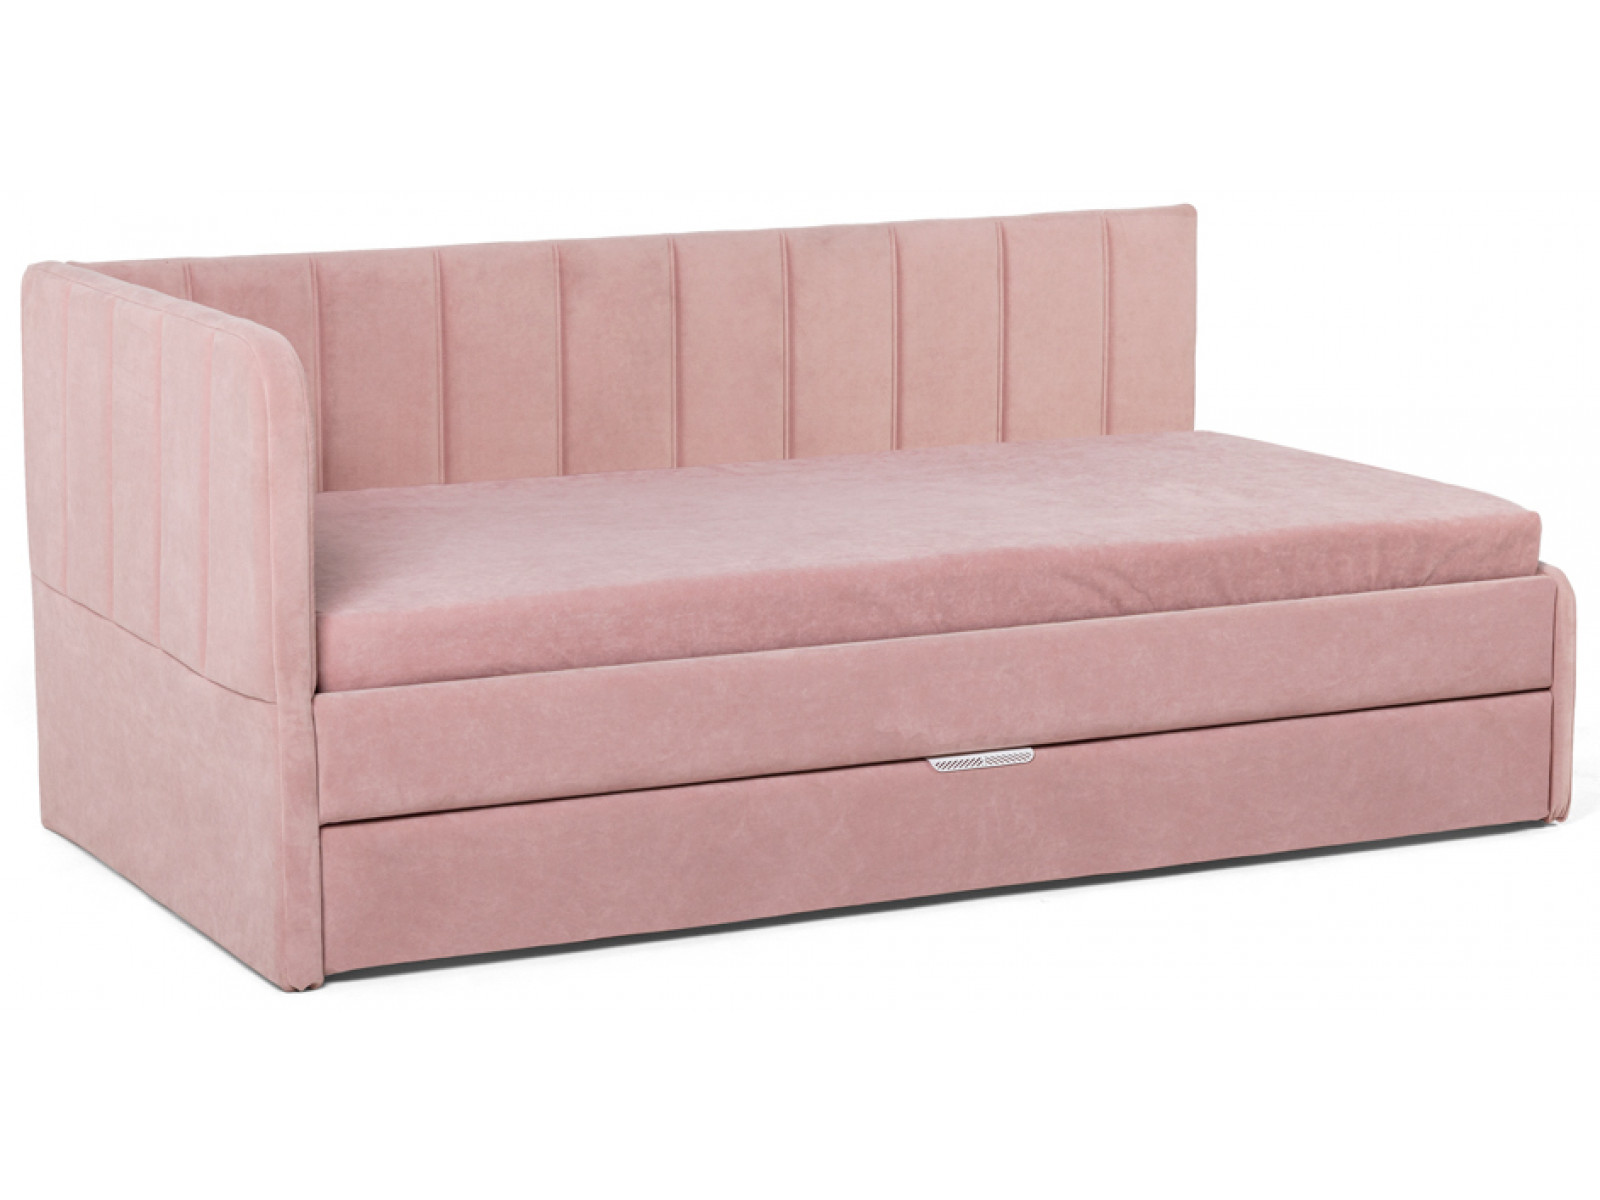 Кровать-диван угловой Crecker купить по выгодной цене в интернет-магазине MiaSofia